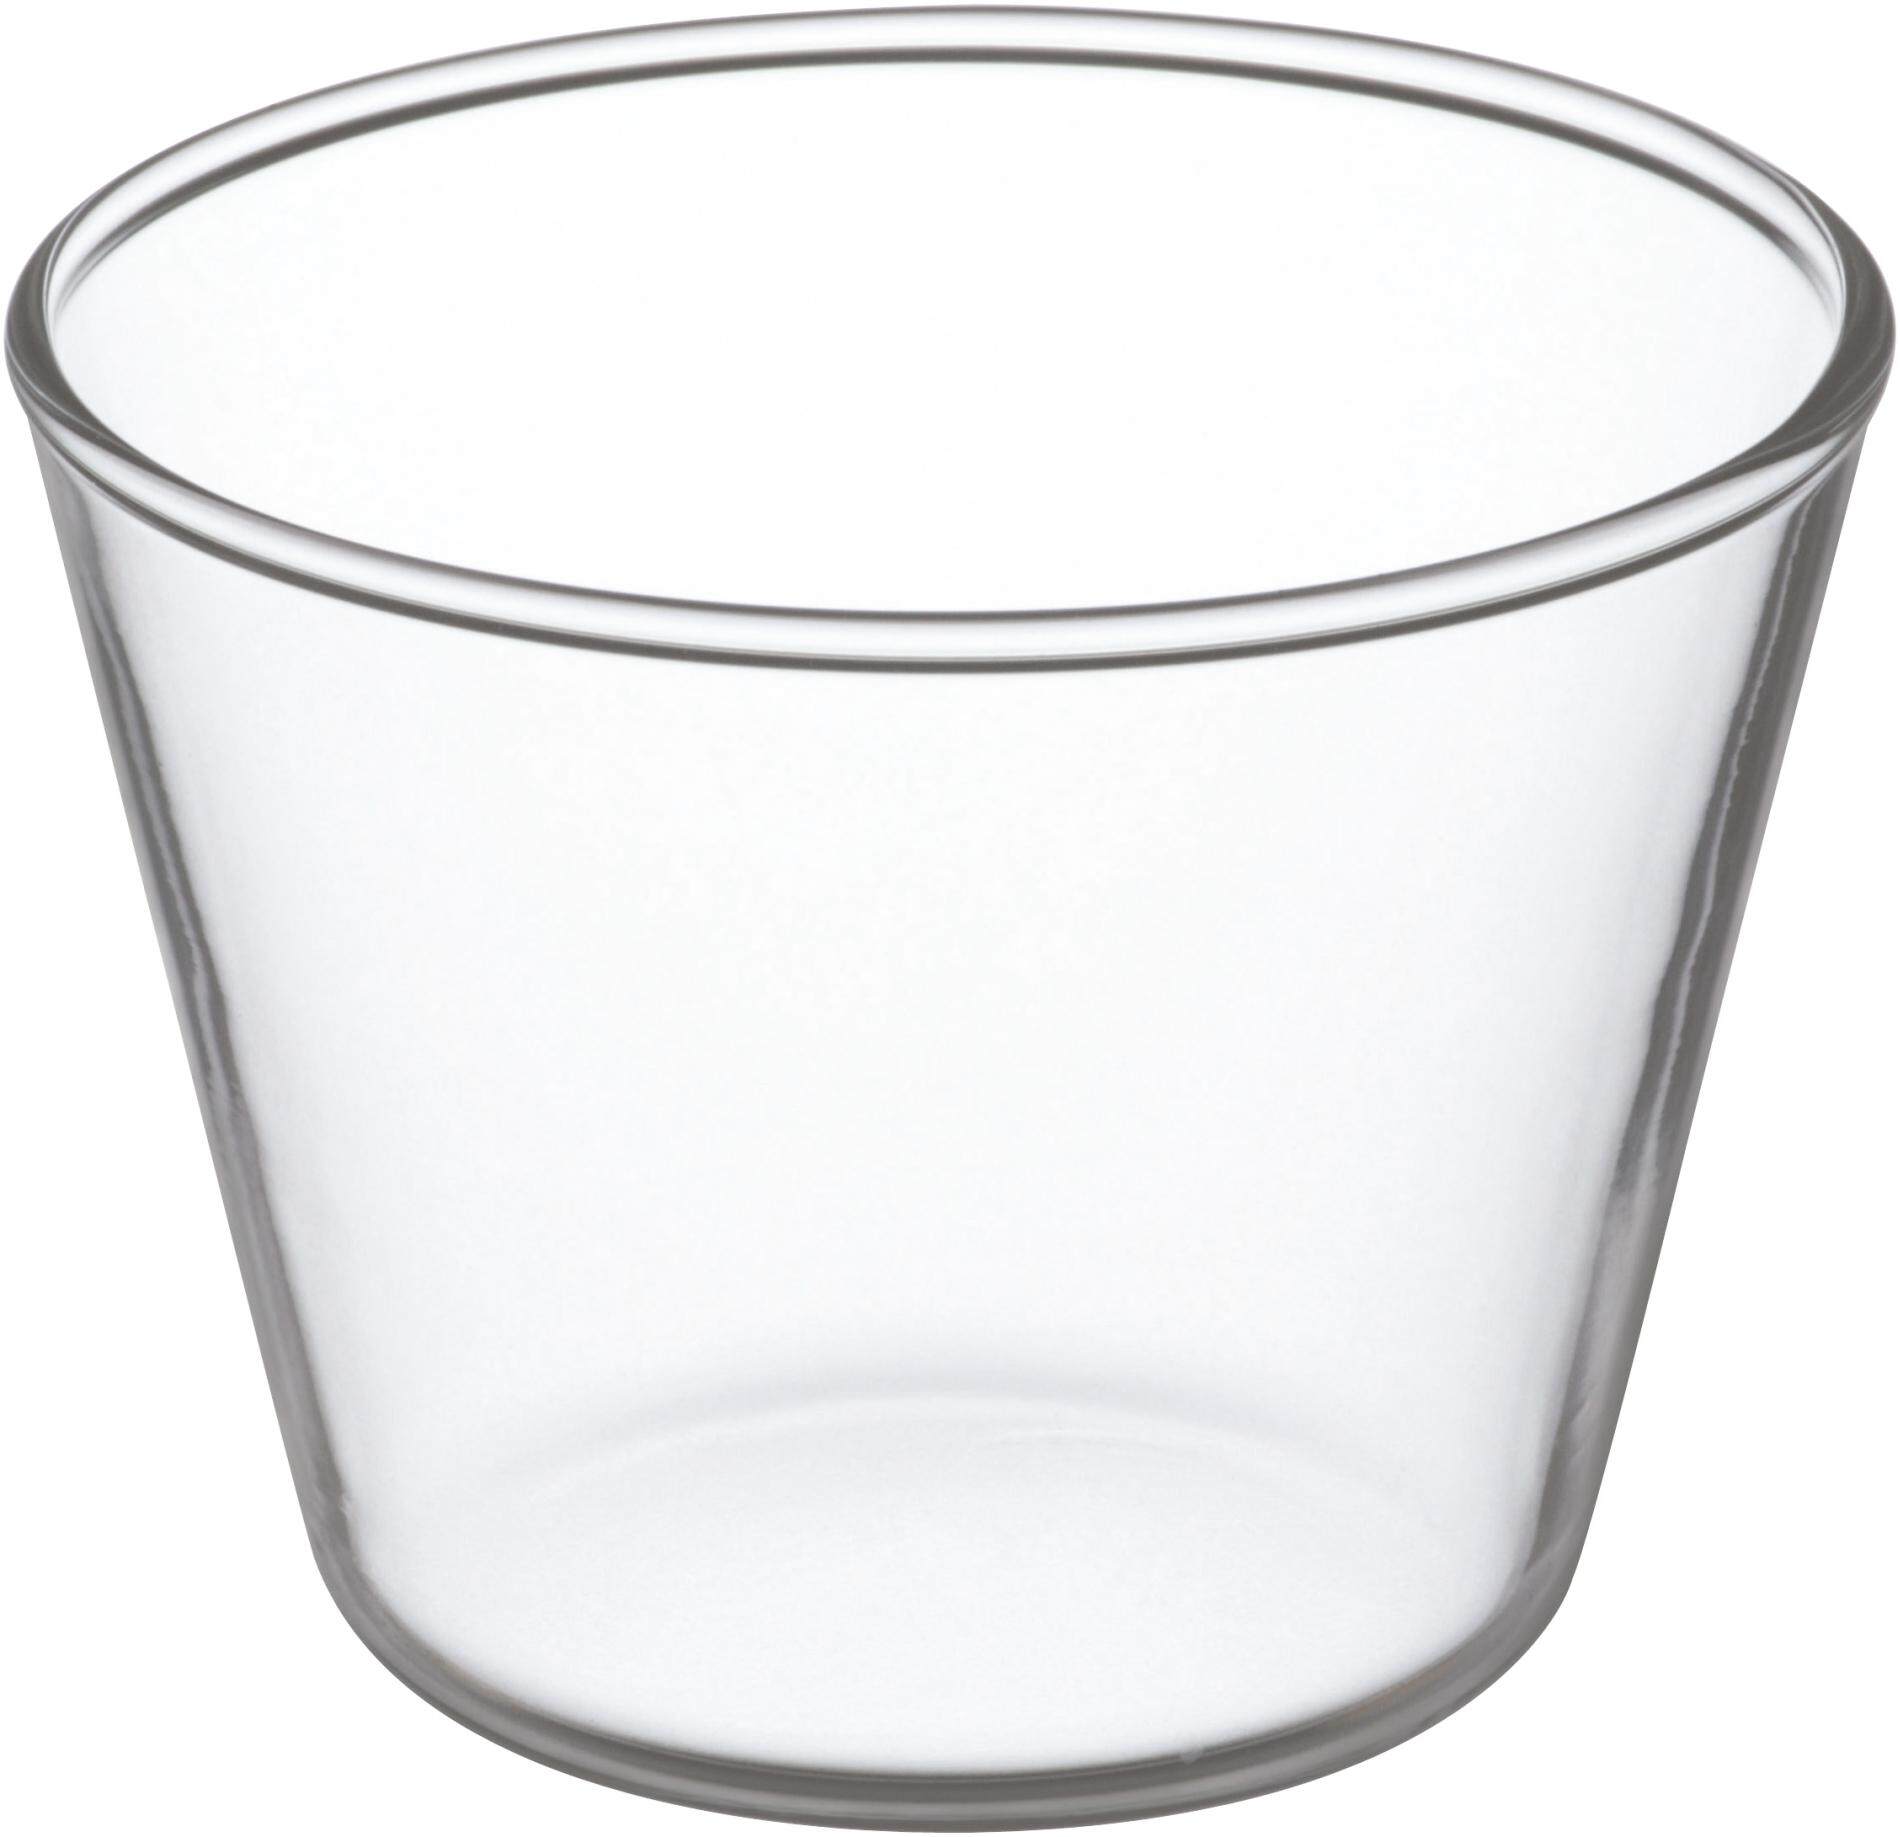 Iwaki KBT904ถ้วยพุดดิ้งแก้วโบโรซิลิเกท 150 มิลลิลิตร (7.5 x 5.7 cm) pudding cup จากแบรนด์ชั้นนำจากญี่ปุ่น แก้วใสมากและคราบไม่เกาะ ราคาถูกที่สุดในนี้